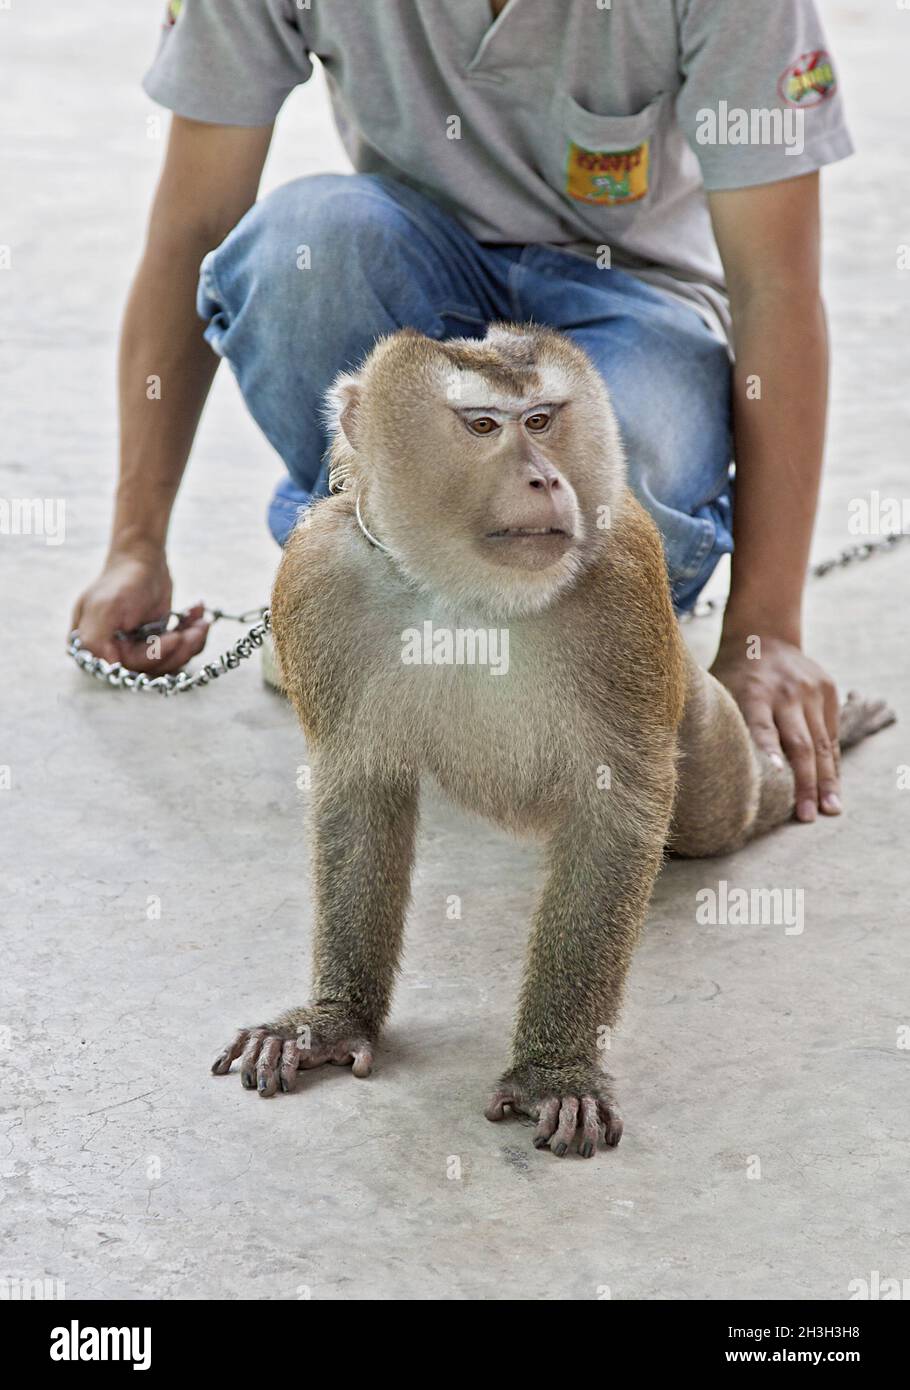 Monkey training Stock Photo